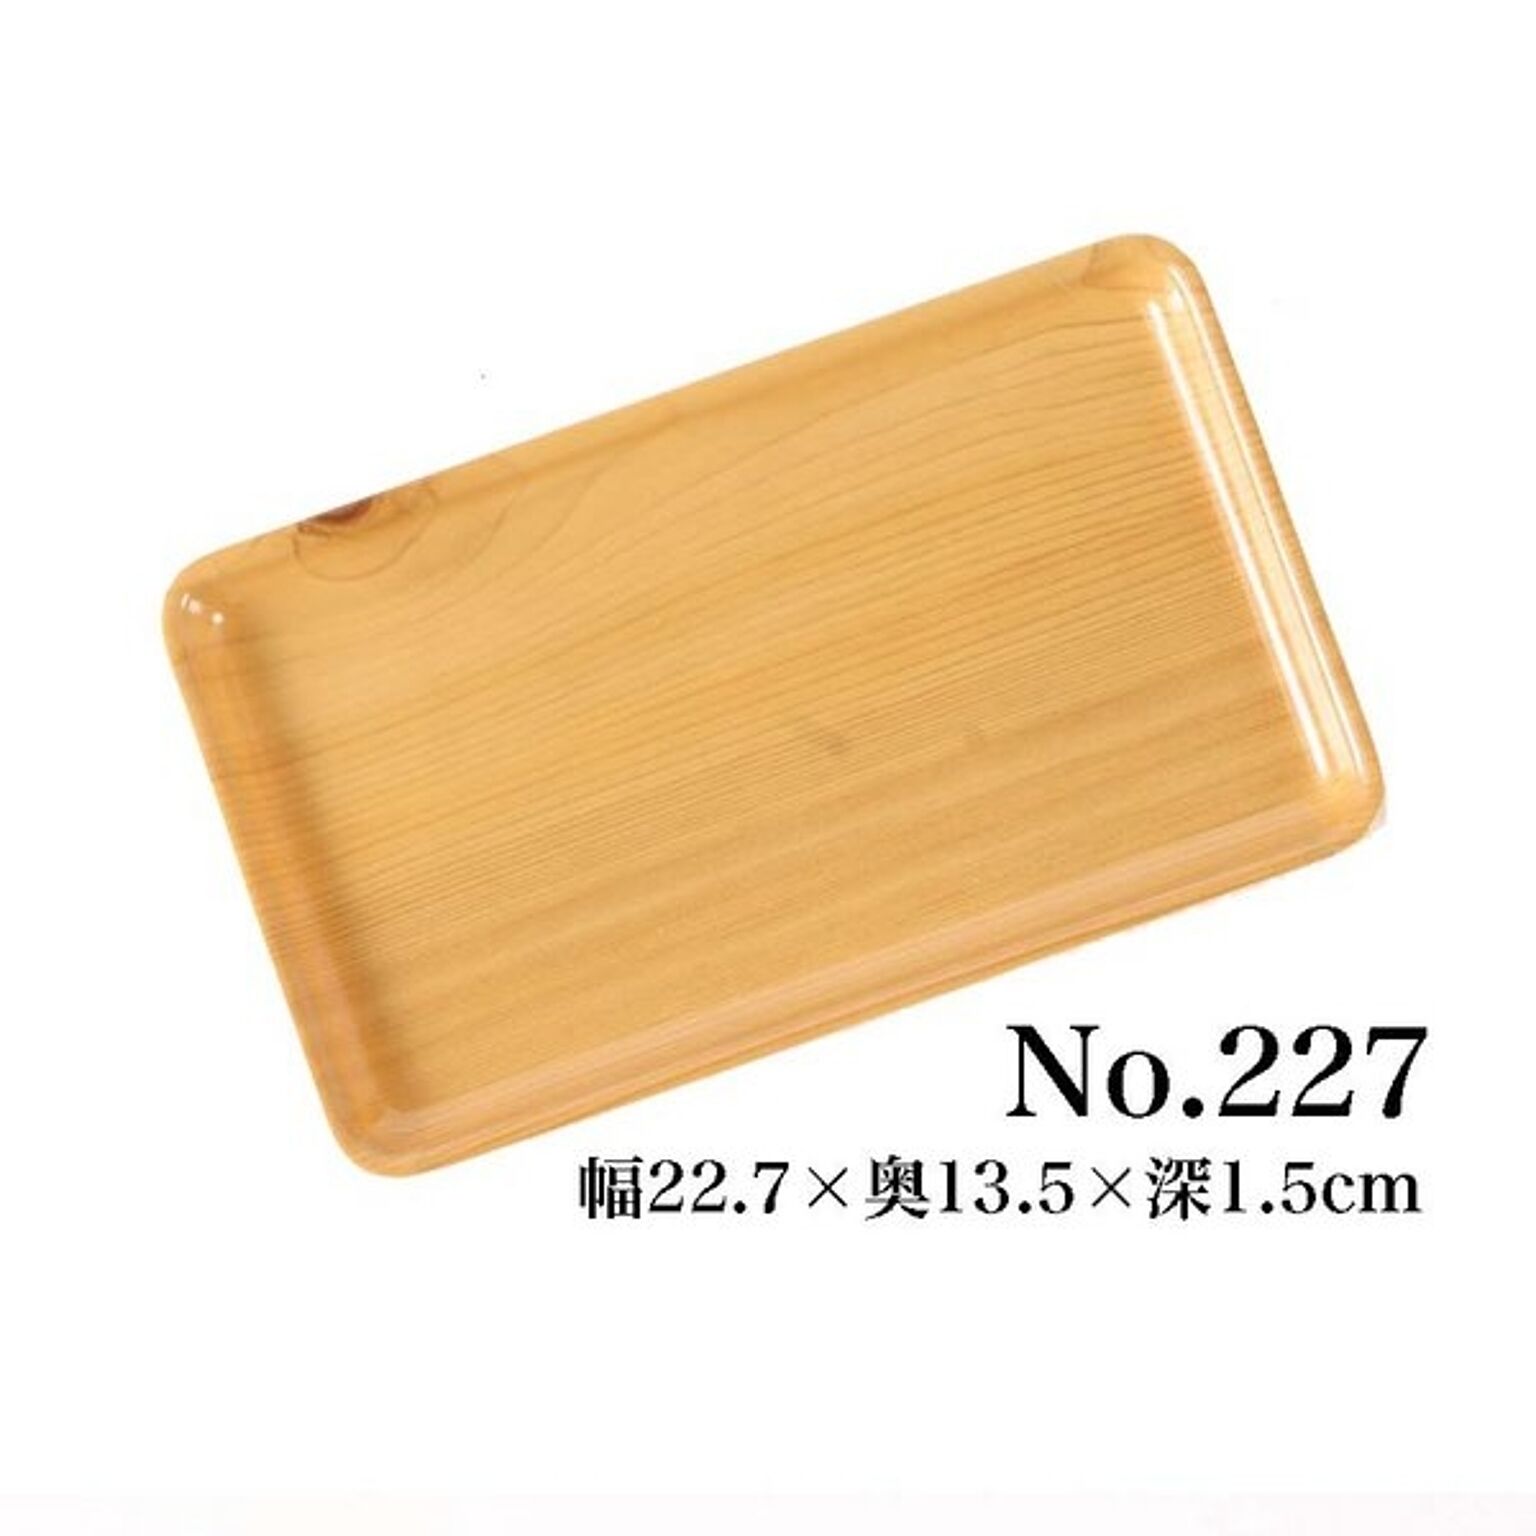 食卓用 トレー 【2個セット】 樹脂製 木目柄 No.227 (業務用/家庭用)